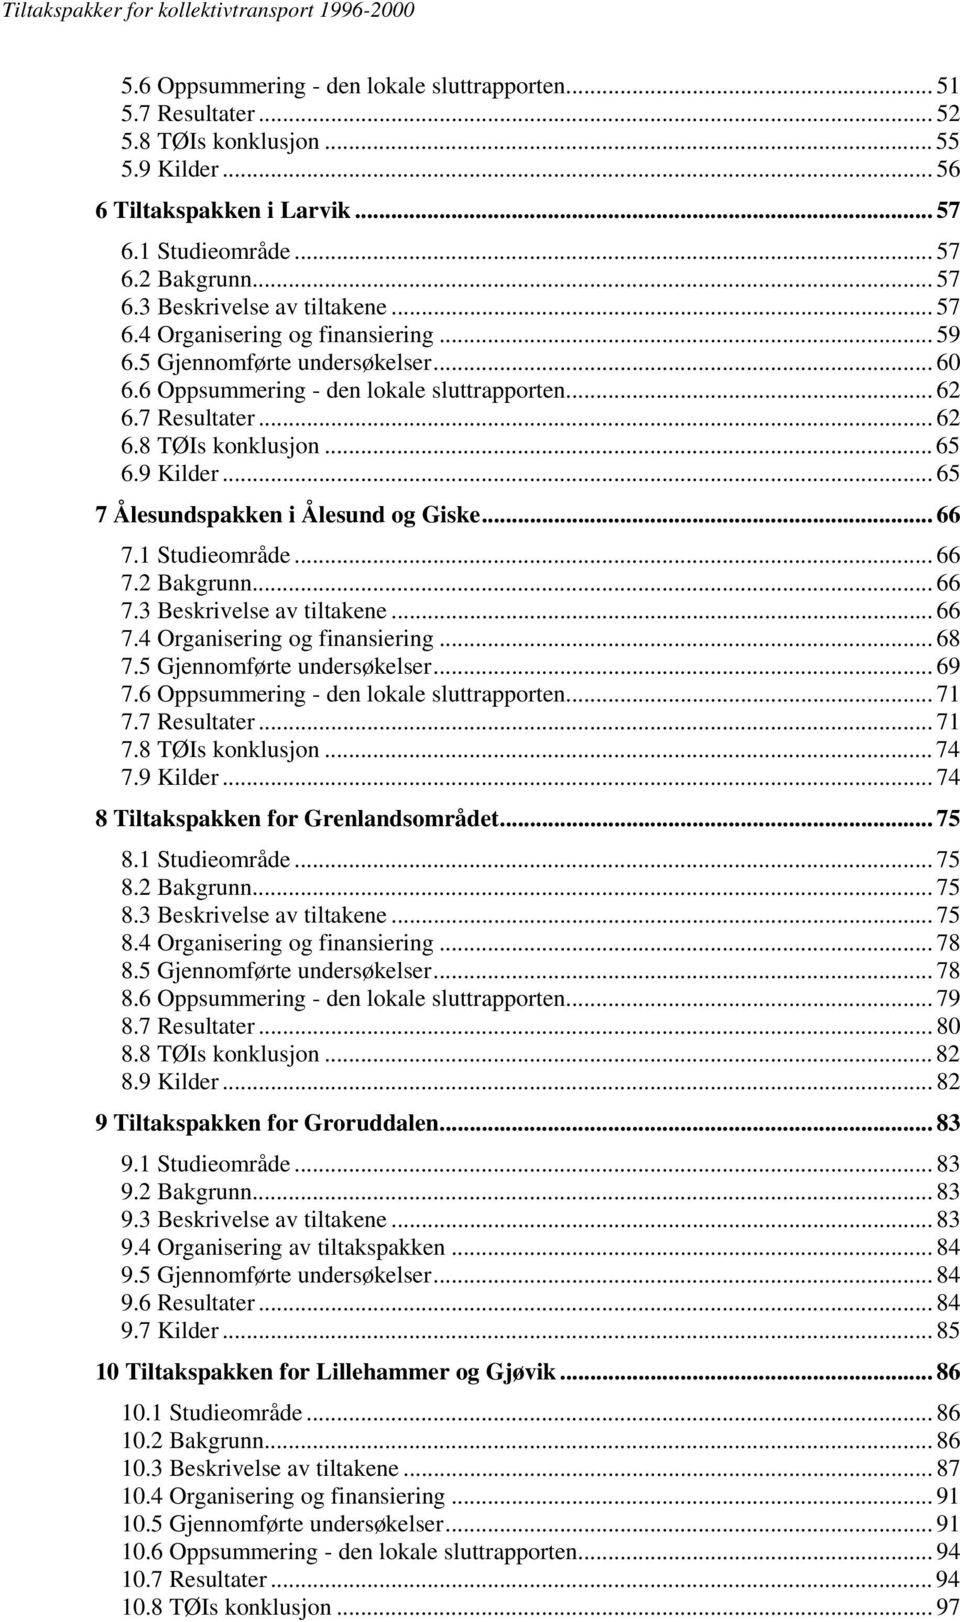 .. 65 7 Ålesundspakken i Ålesund og Giske... 66 7.1 Studieområde... 66 7.2 Bakgrunn... 66 7.3 Beskrivelse av tiltakene... 66 7.4 Organisering og finansiering... 68 7.5 Gjennomførte undersøkelser.